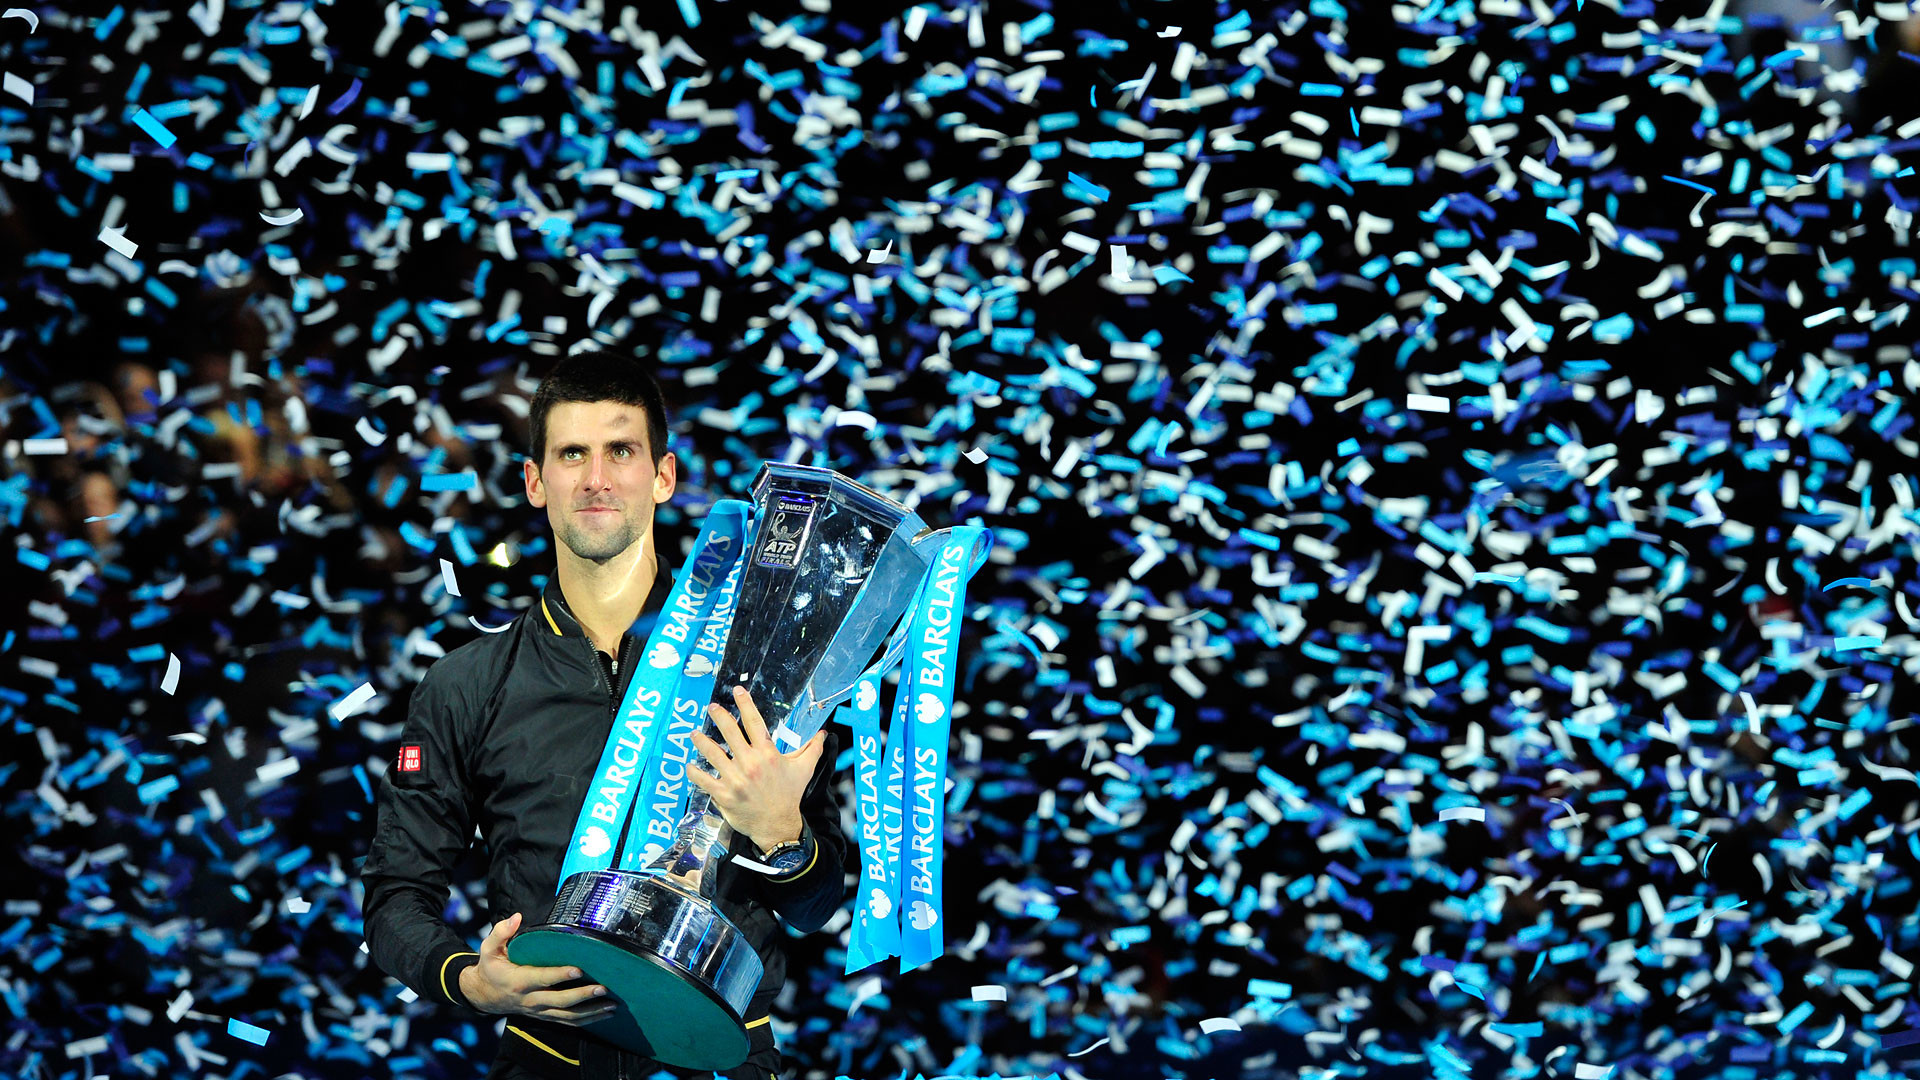 1920x1080 Djokovic Wins ATP World Tour Finals, sponsored by Mercedes-Benz -  MercedesBlog